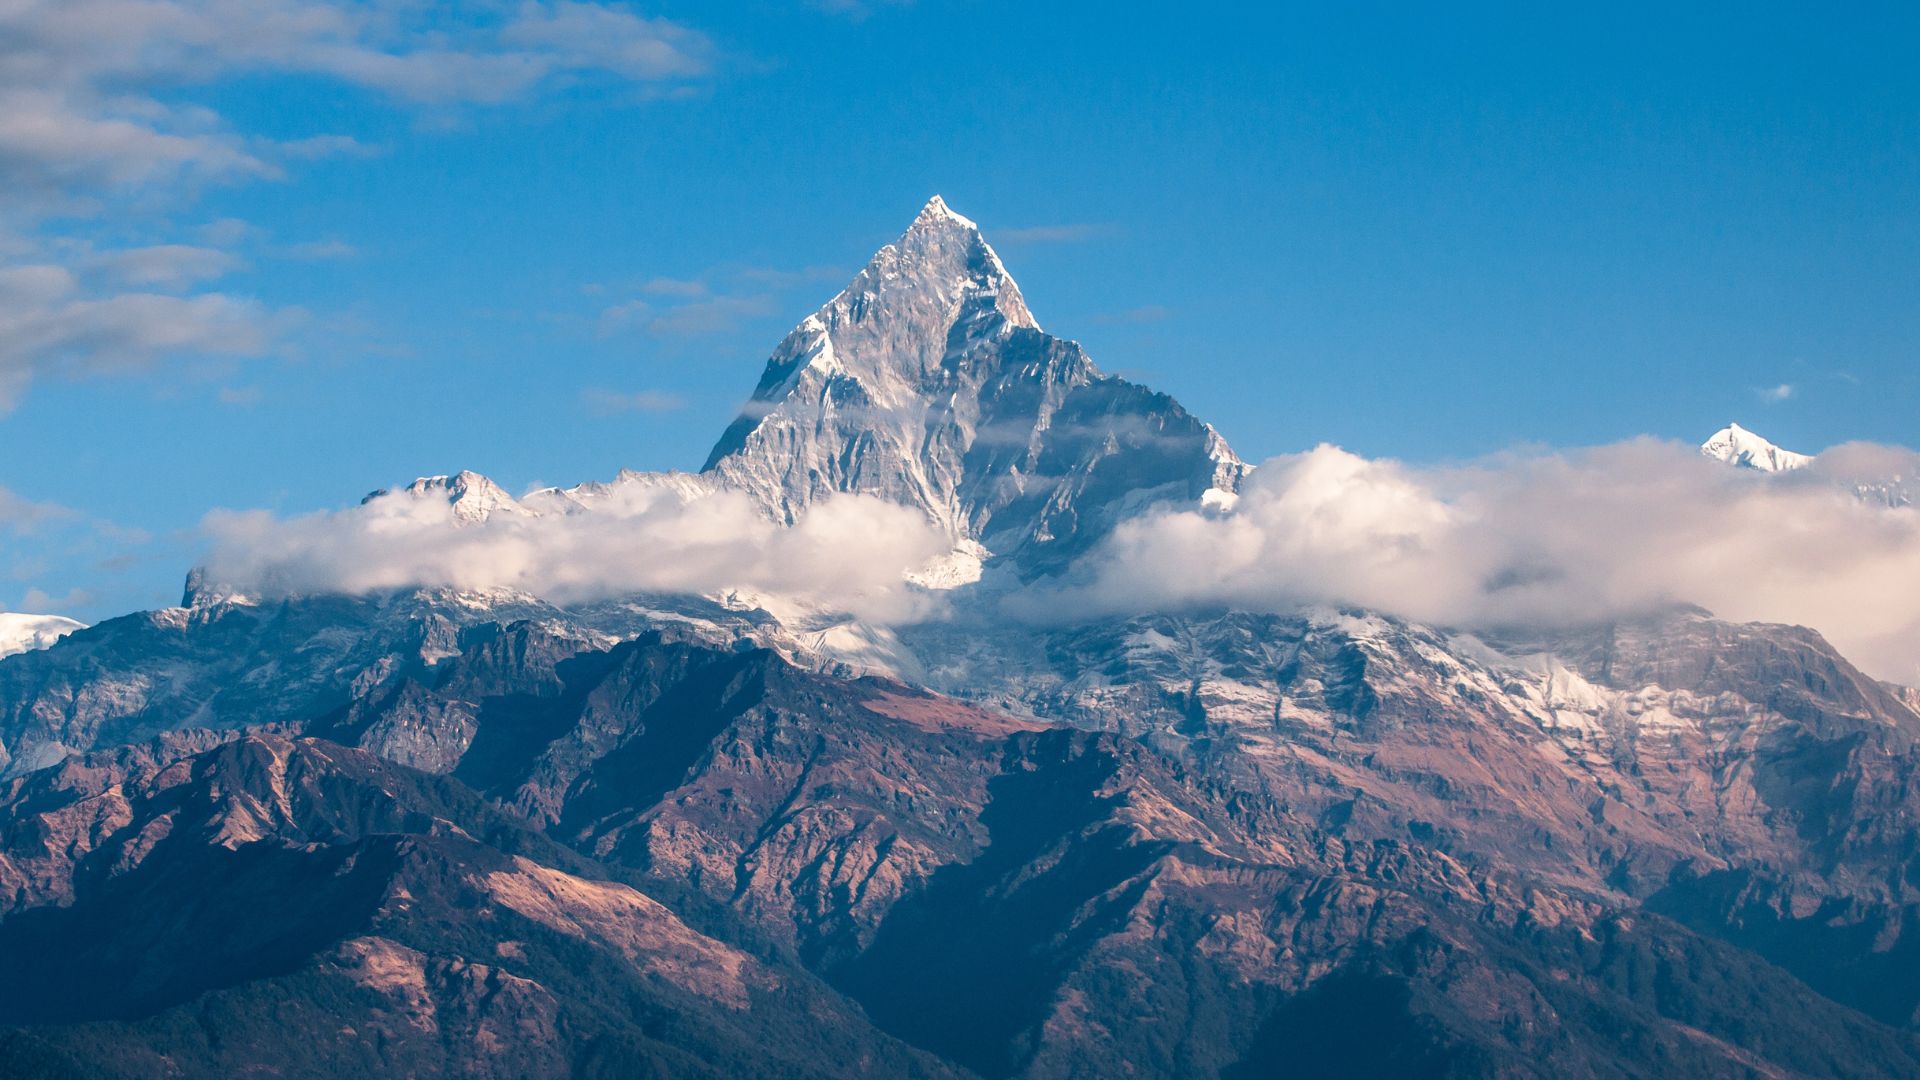 Räätälöity matka - Nepalin kiertomatka - Katmandu ja Himalajan huiput matkat